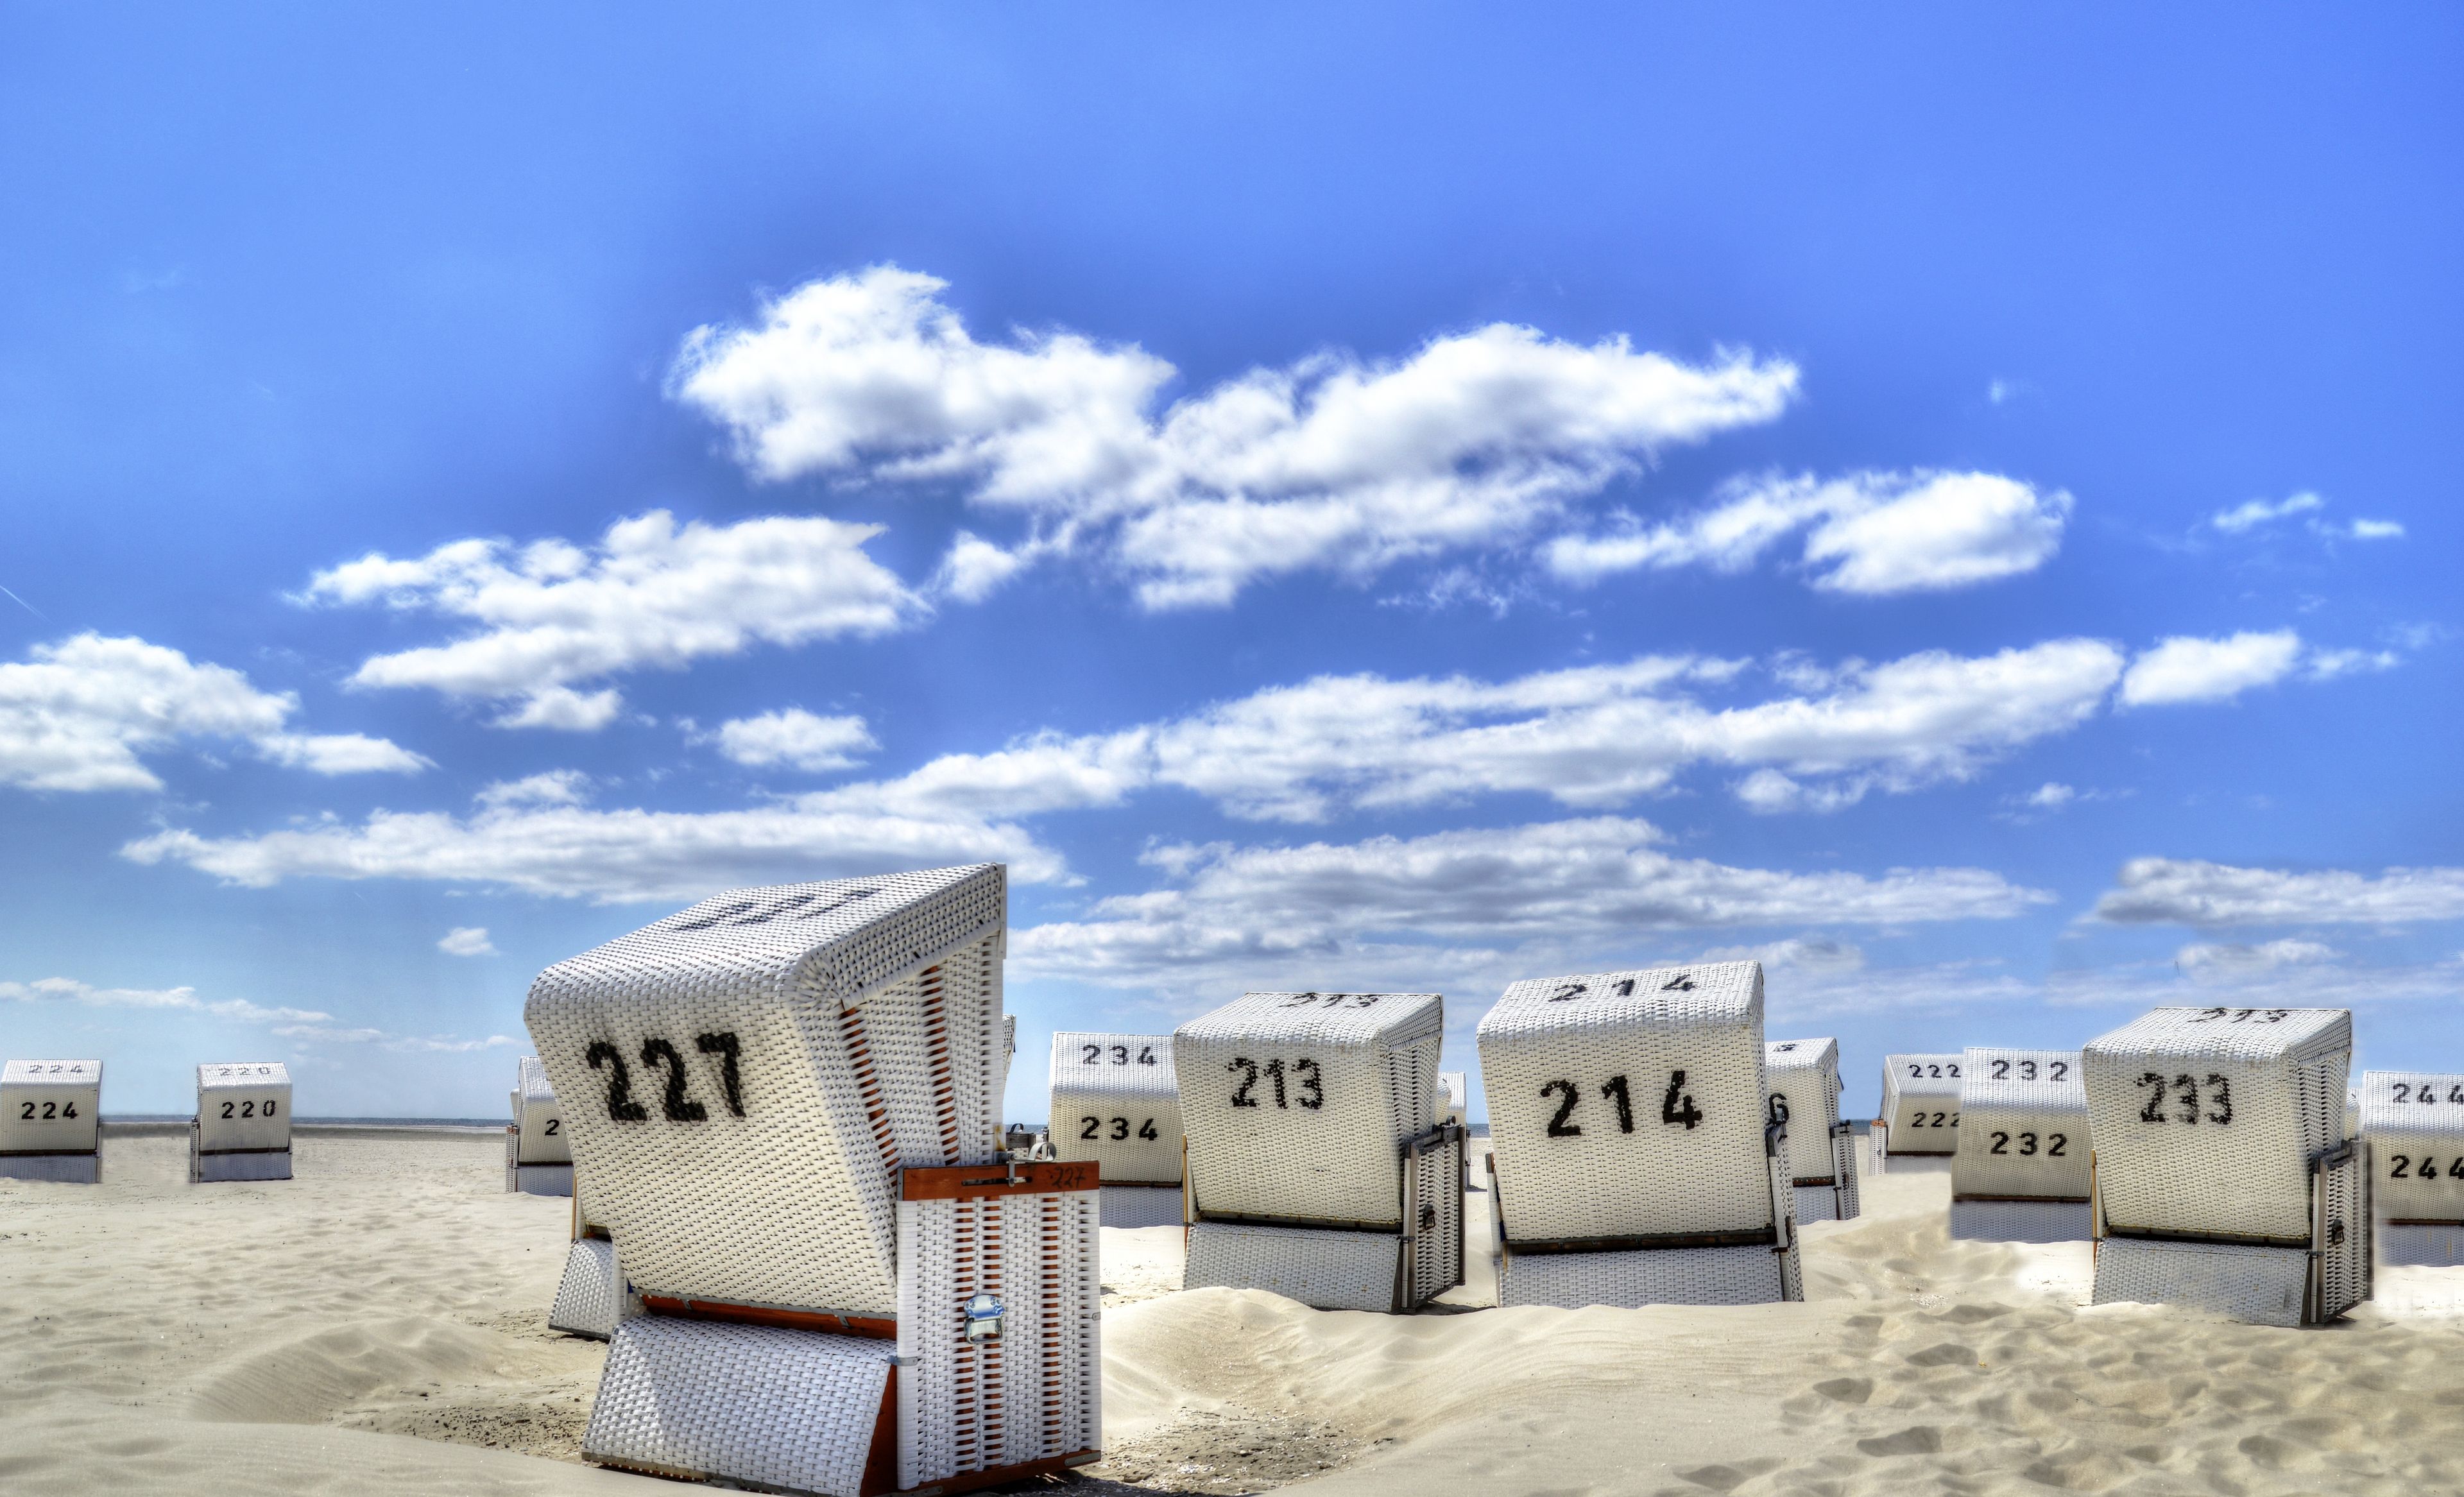 Chaises de plage à Norderney